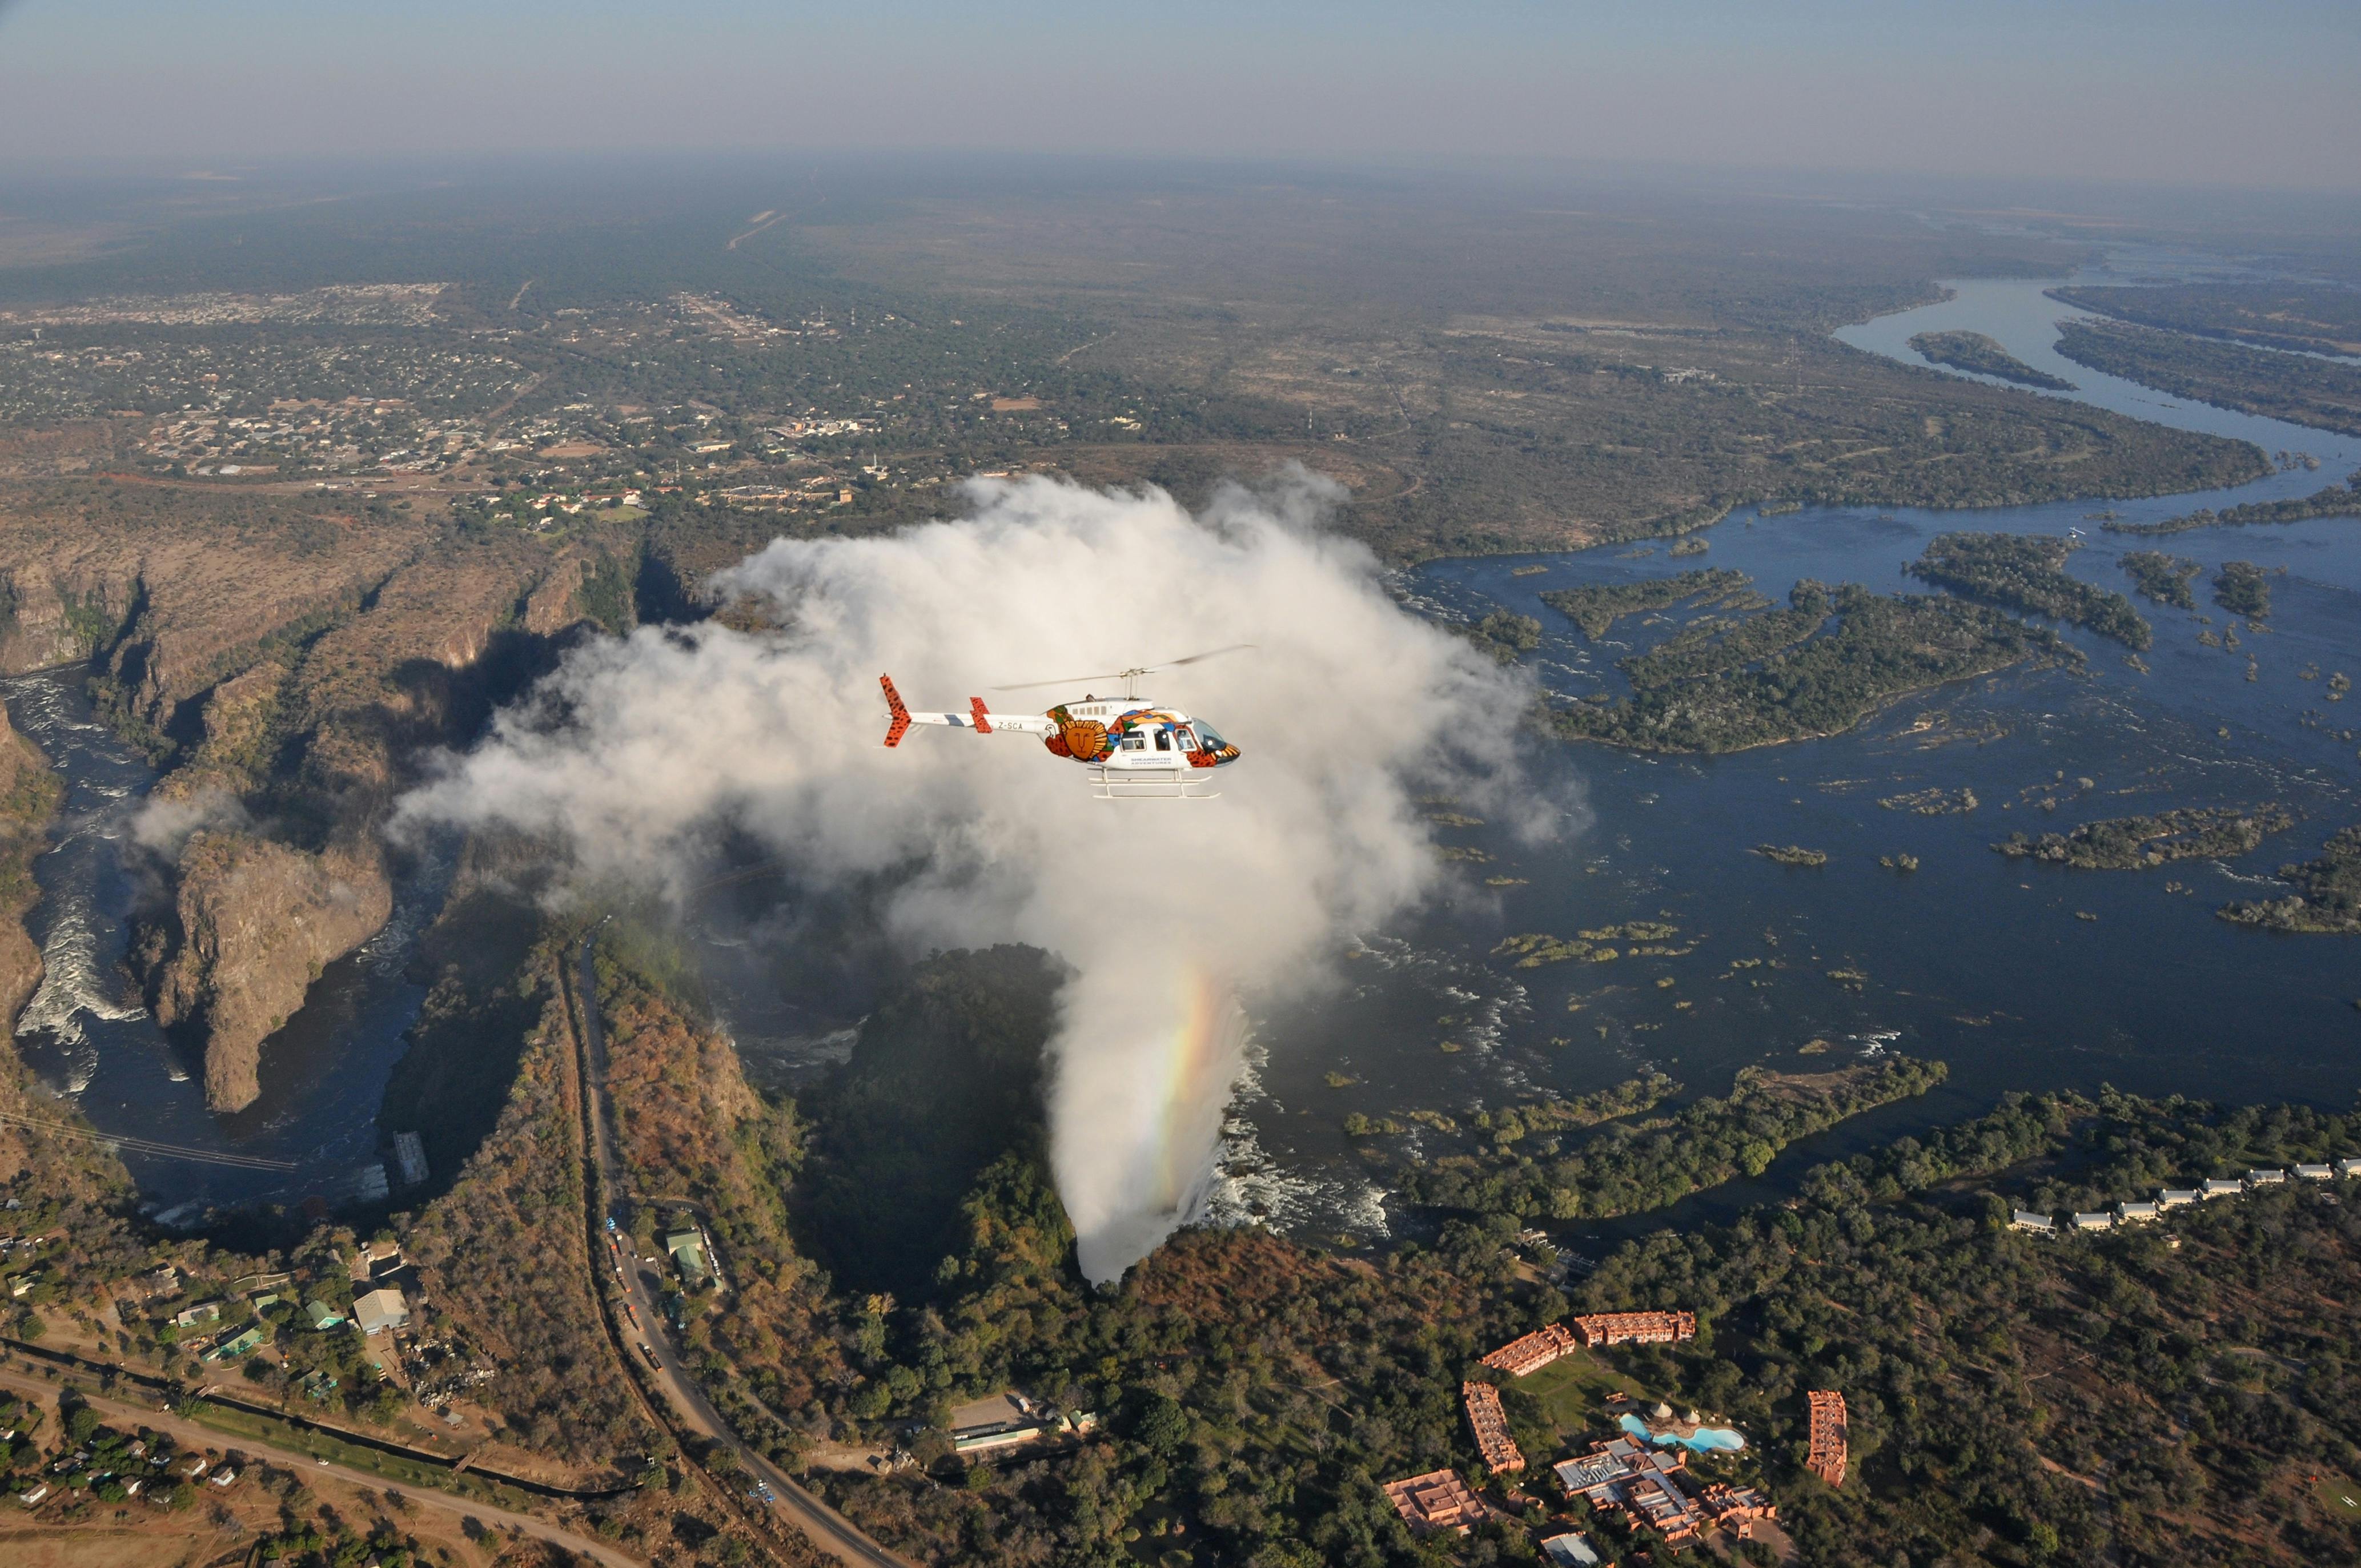 12-minütiger Helikopterflug über die Victoriafälle von der Seite Simbabwes